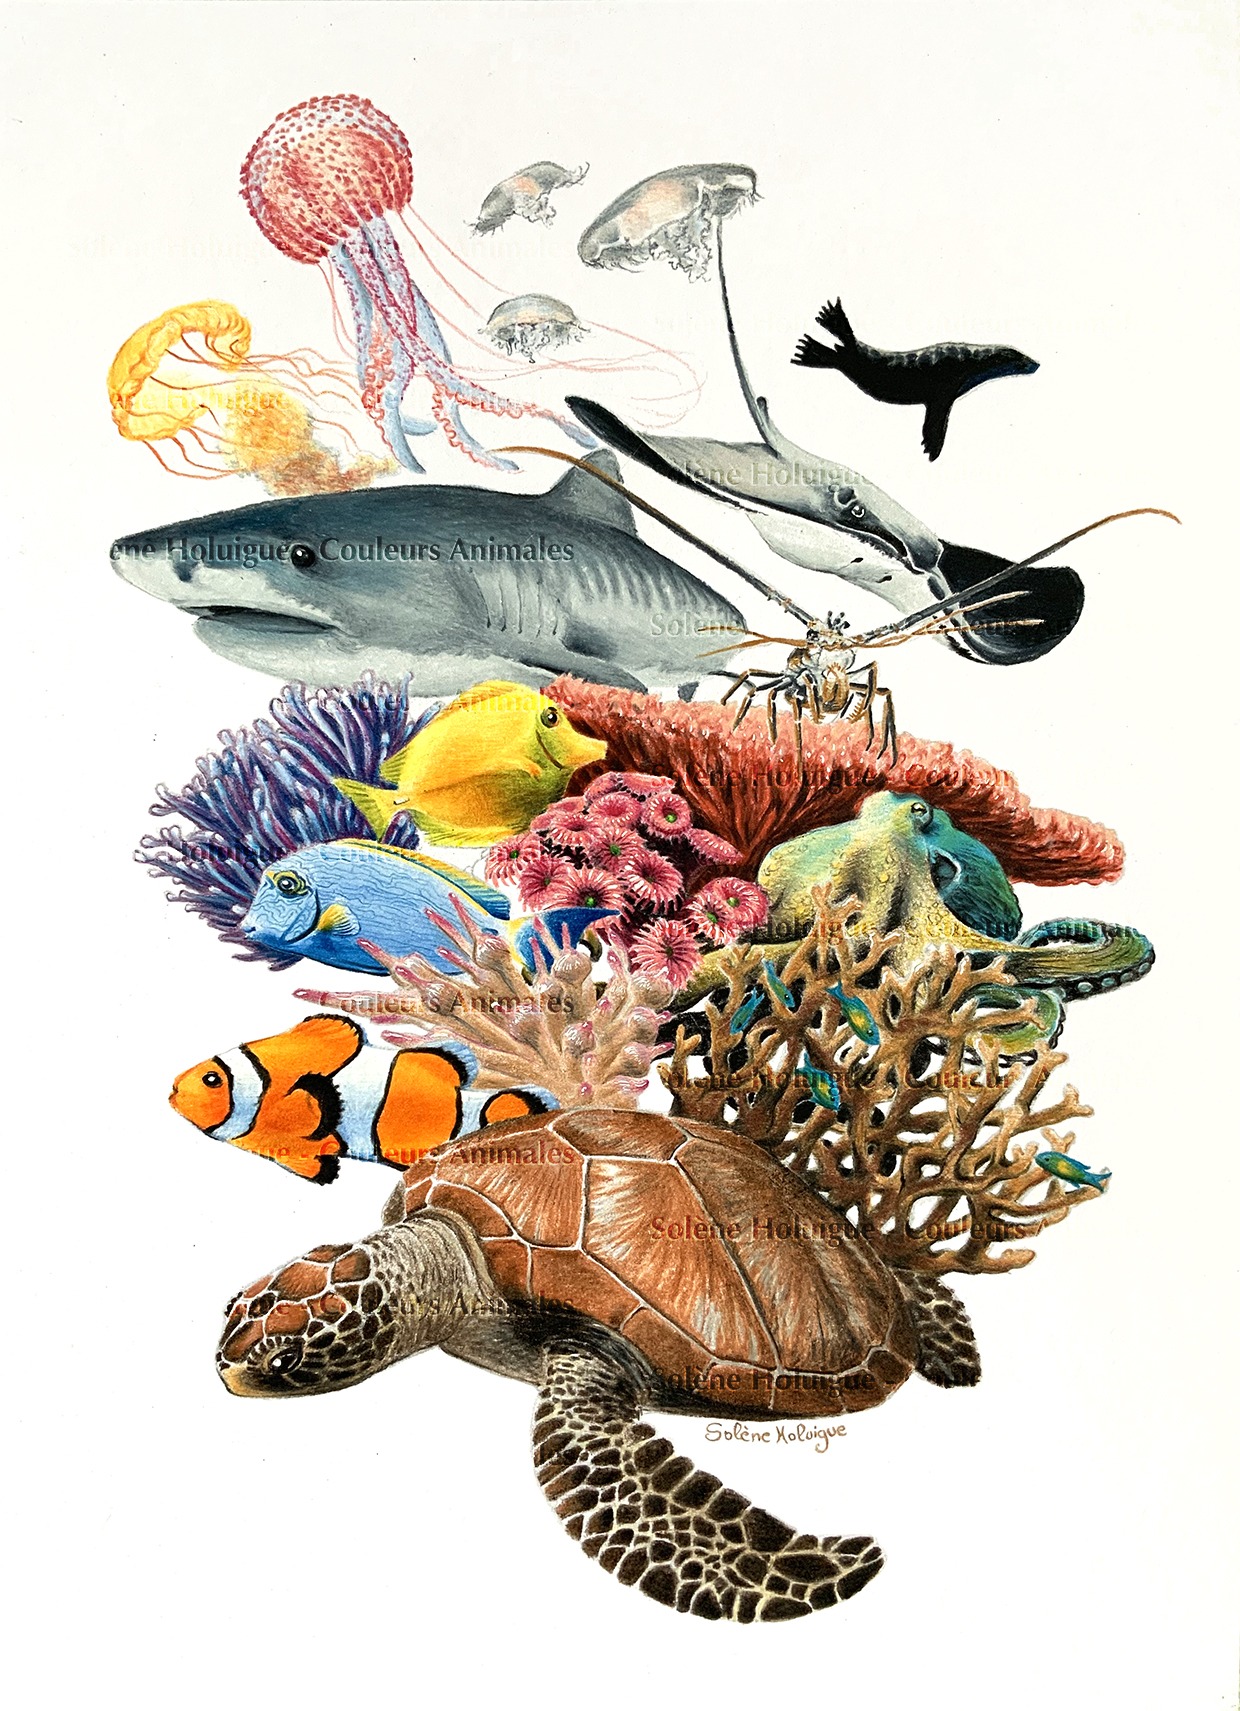 dessin traditionnel ou numérique - crayon animaux des aquarium